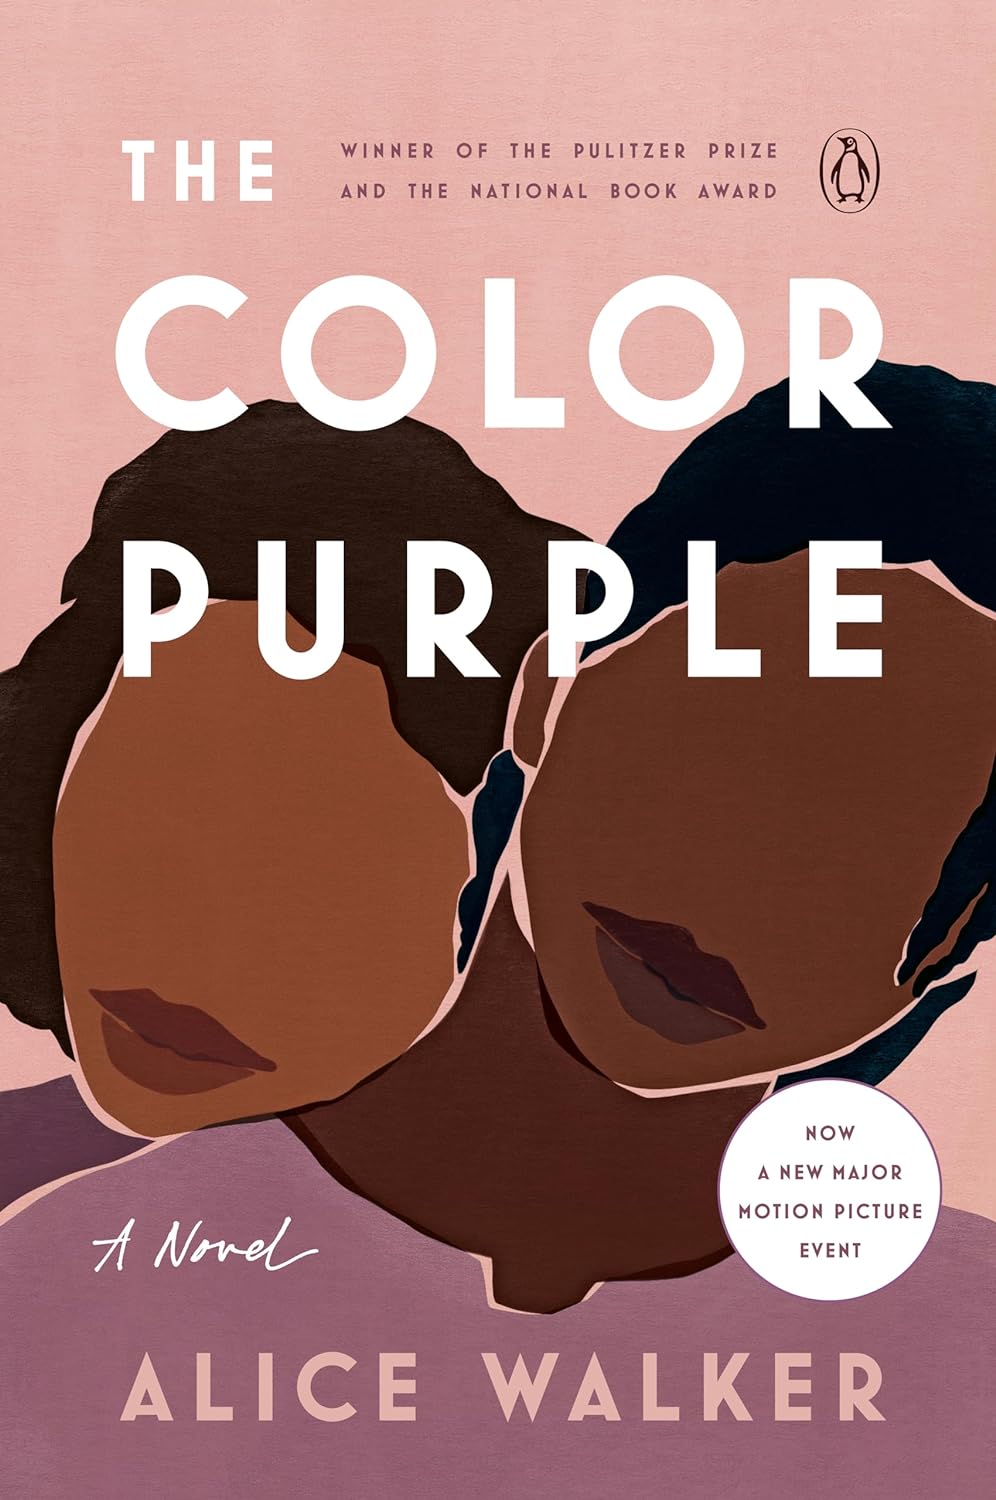 Book cover: "The Color Purple."